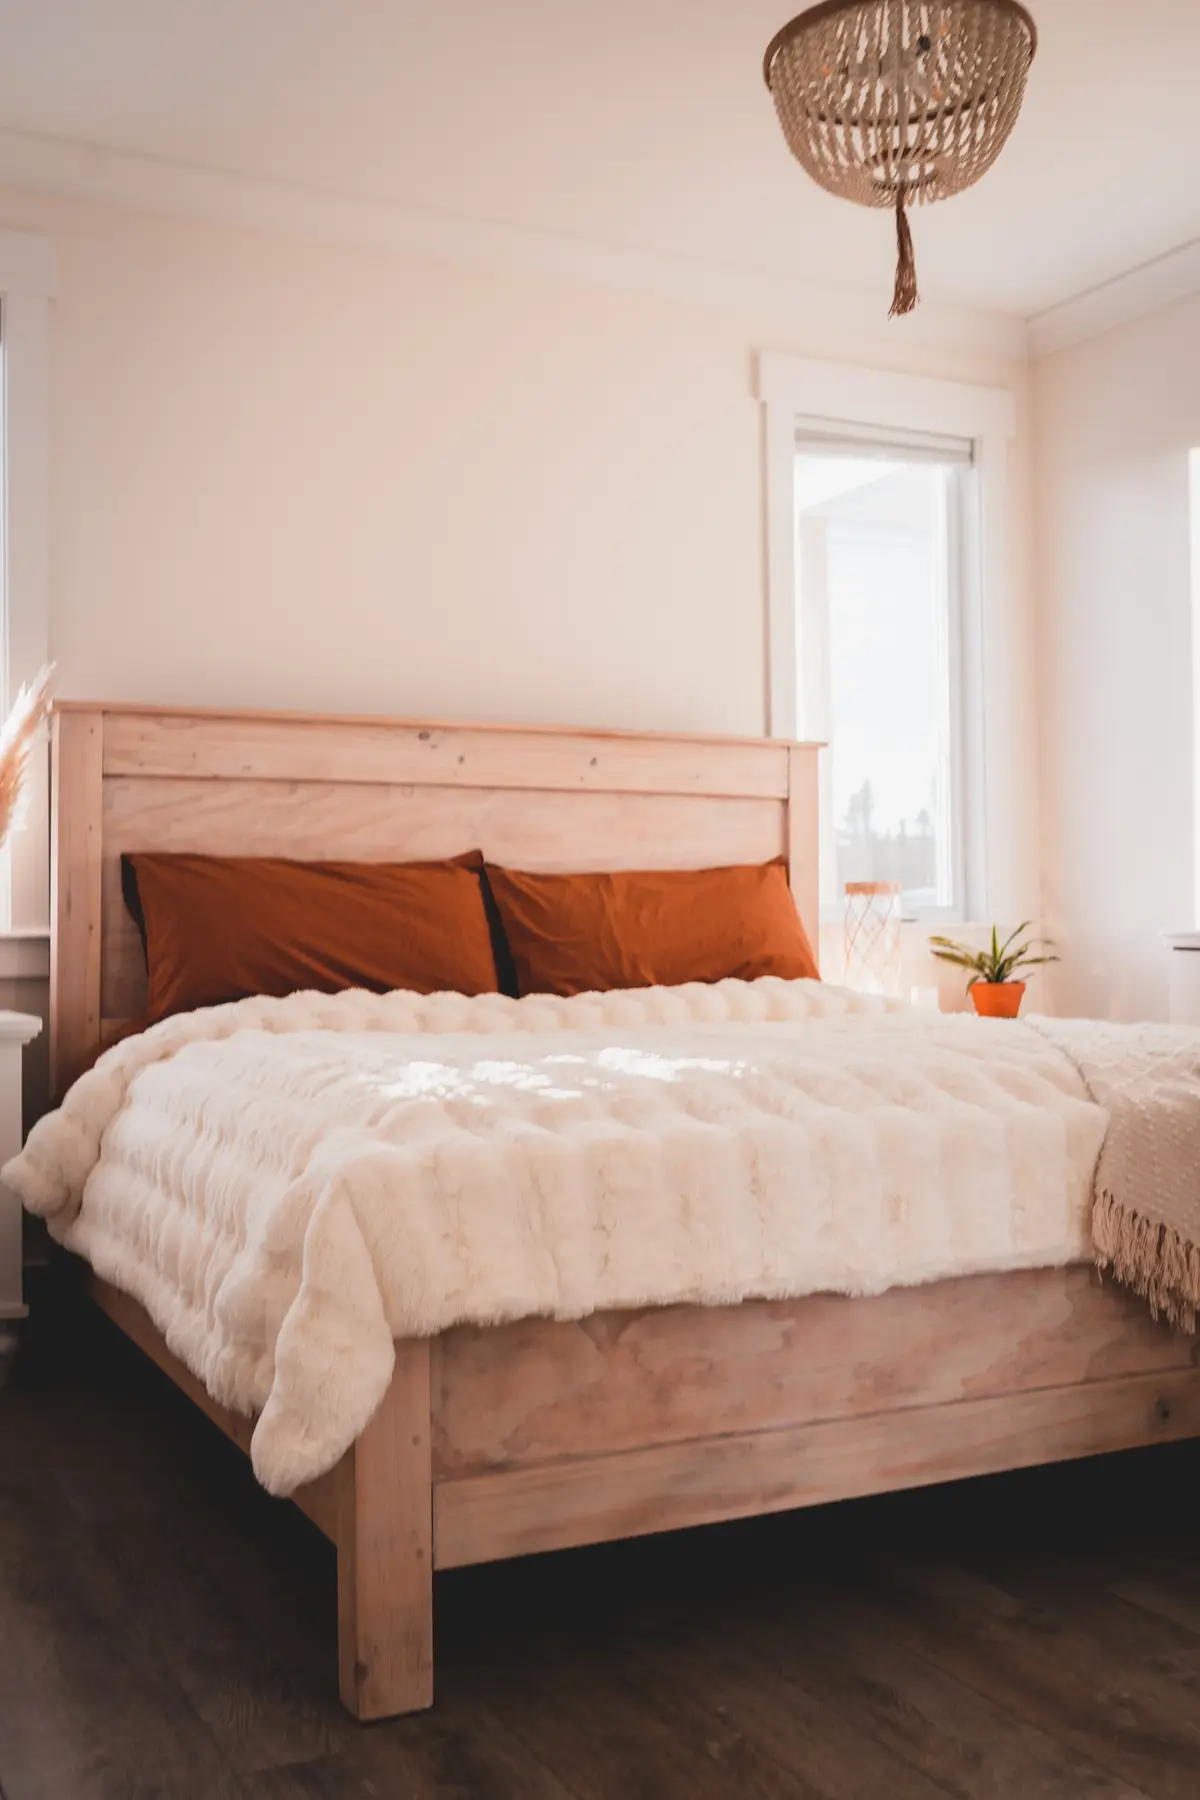 Łoże drewniane w przytulnej sypialni w jasnych kolorach z pomarańczowymi poduszkami i jasną narzutą